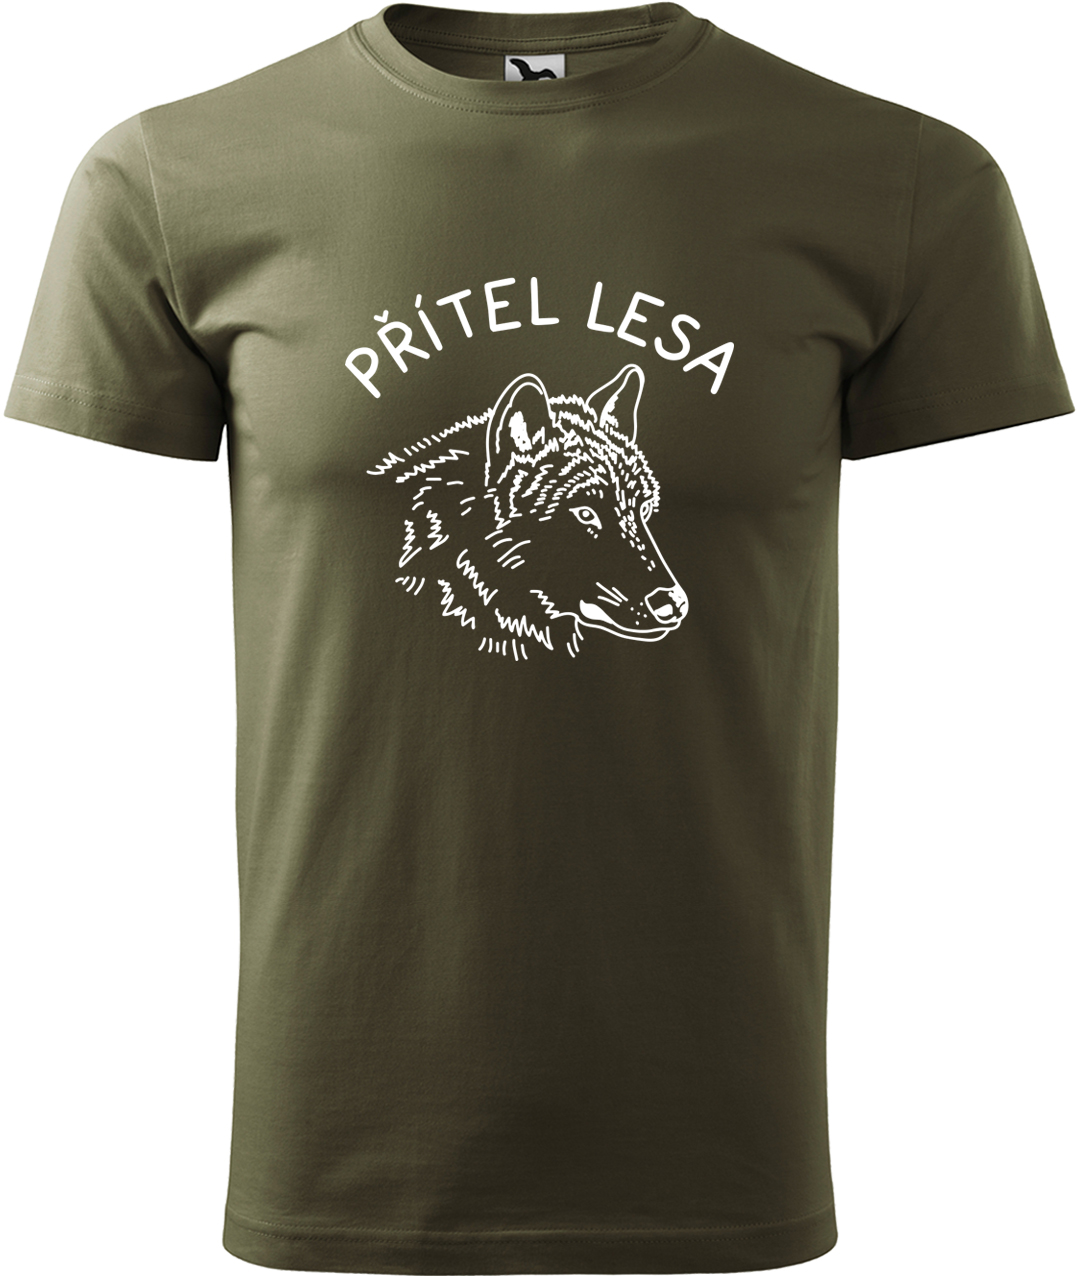 Pánské tričko s vlkem - Přítel lesa Velikost: 3XL, Barva: Military (69), Střih: pánský